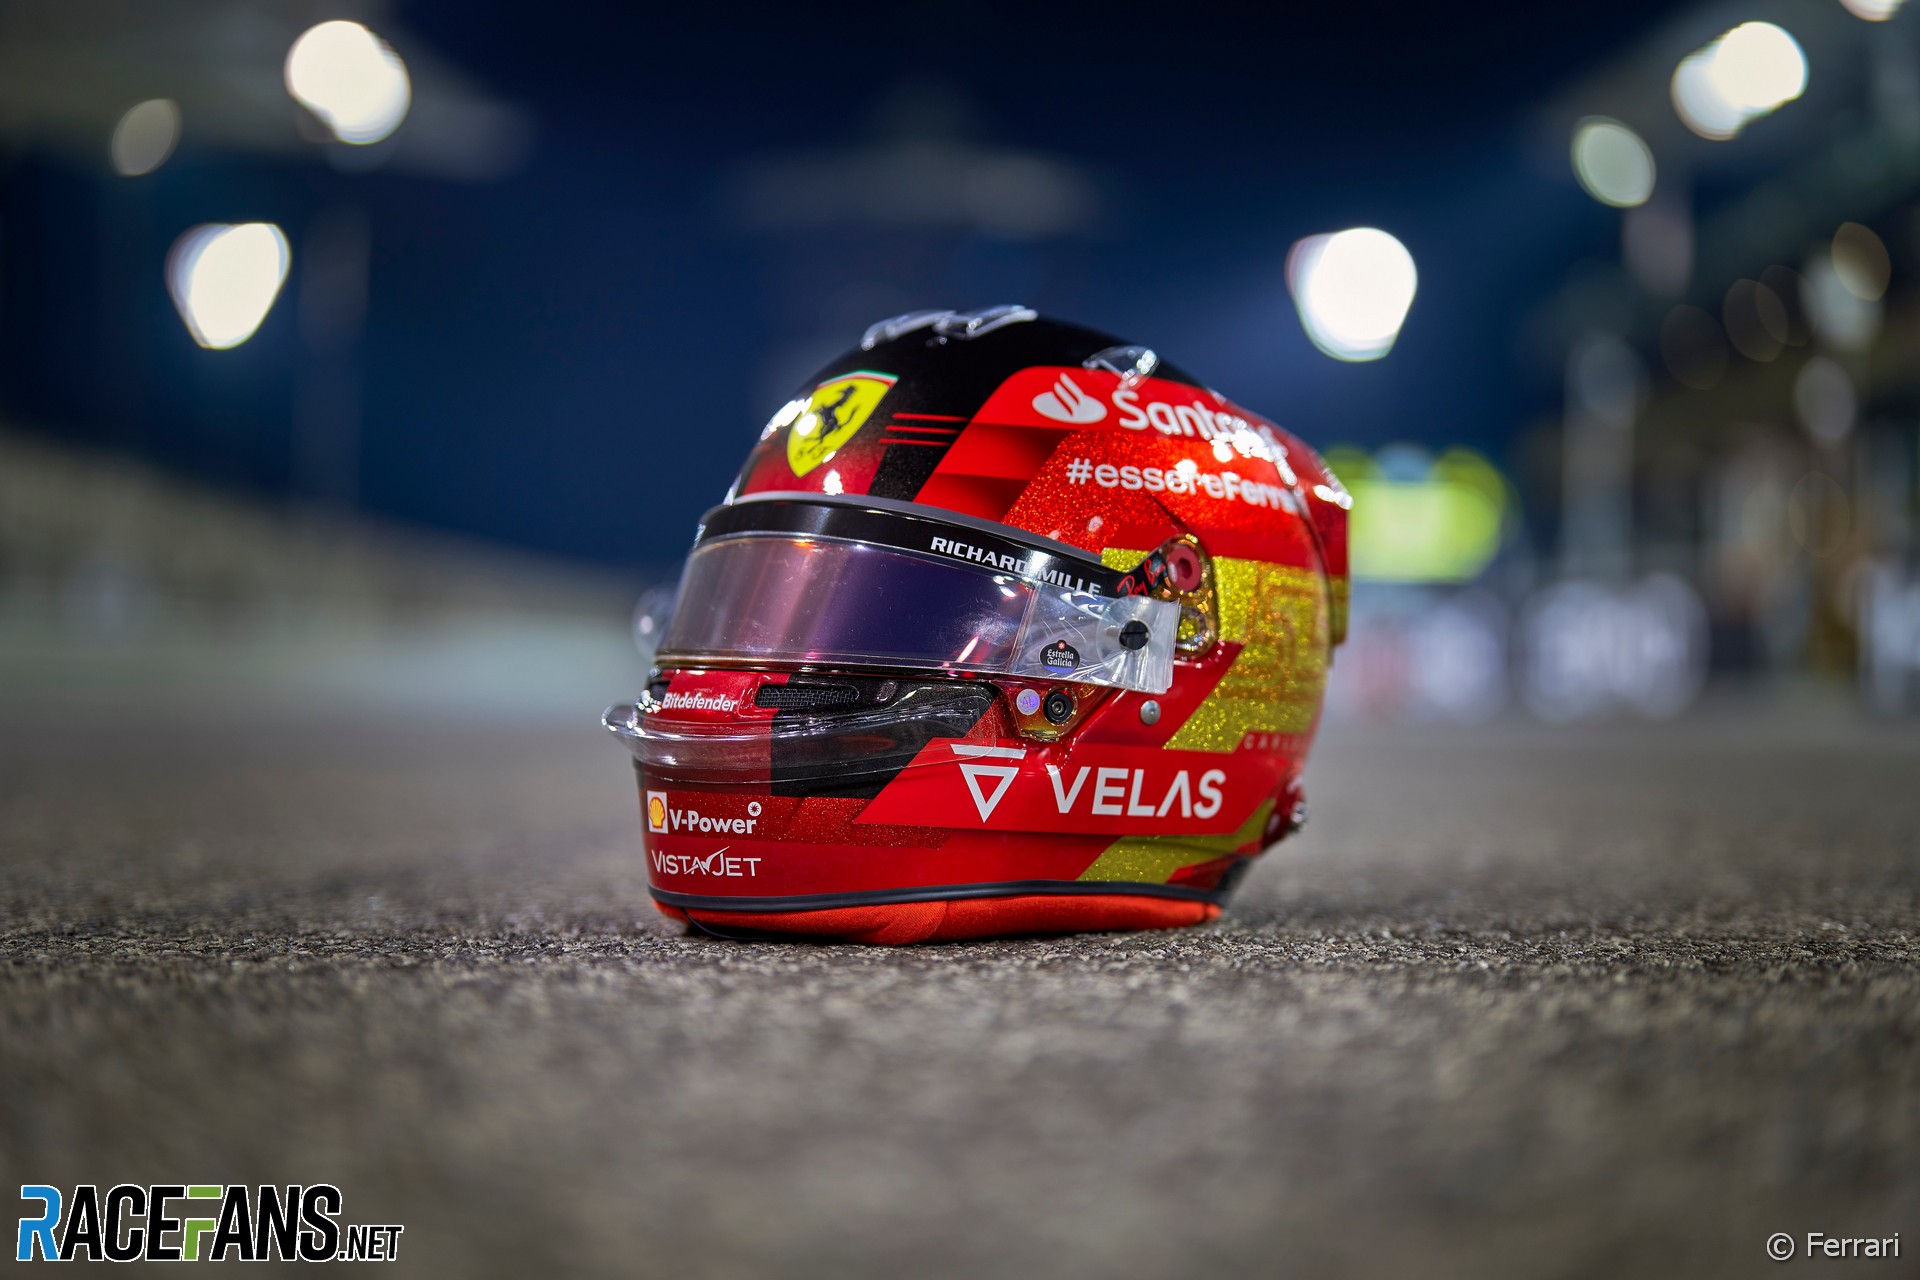 Carlos Sainz Jnr's 2022 Abu Dhabi Grand Prix helmet